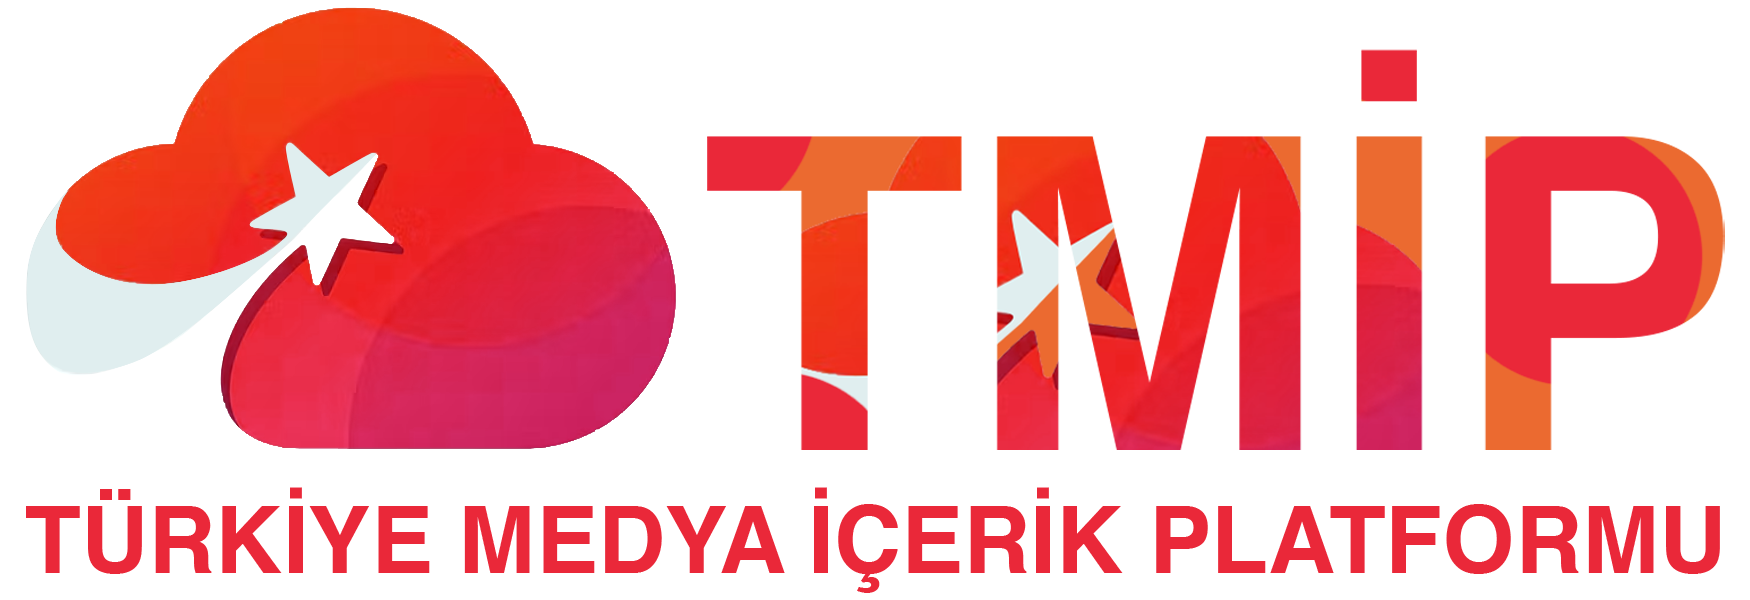 TMIP - Türkiye Medya İçerik Paylaşım Platformu